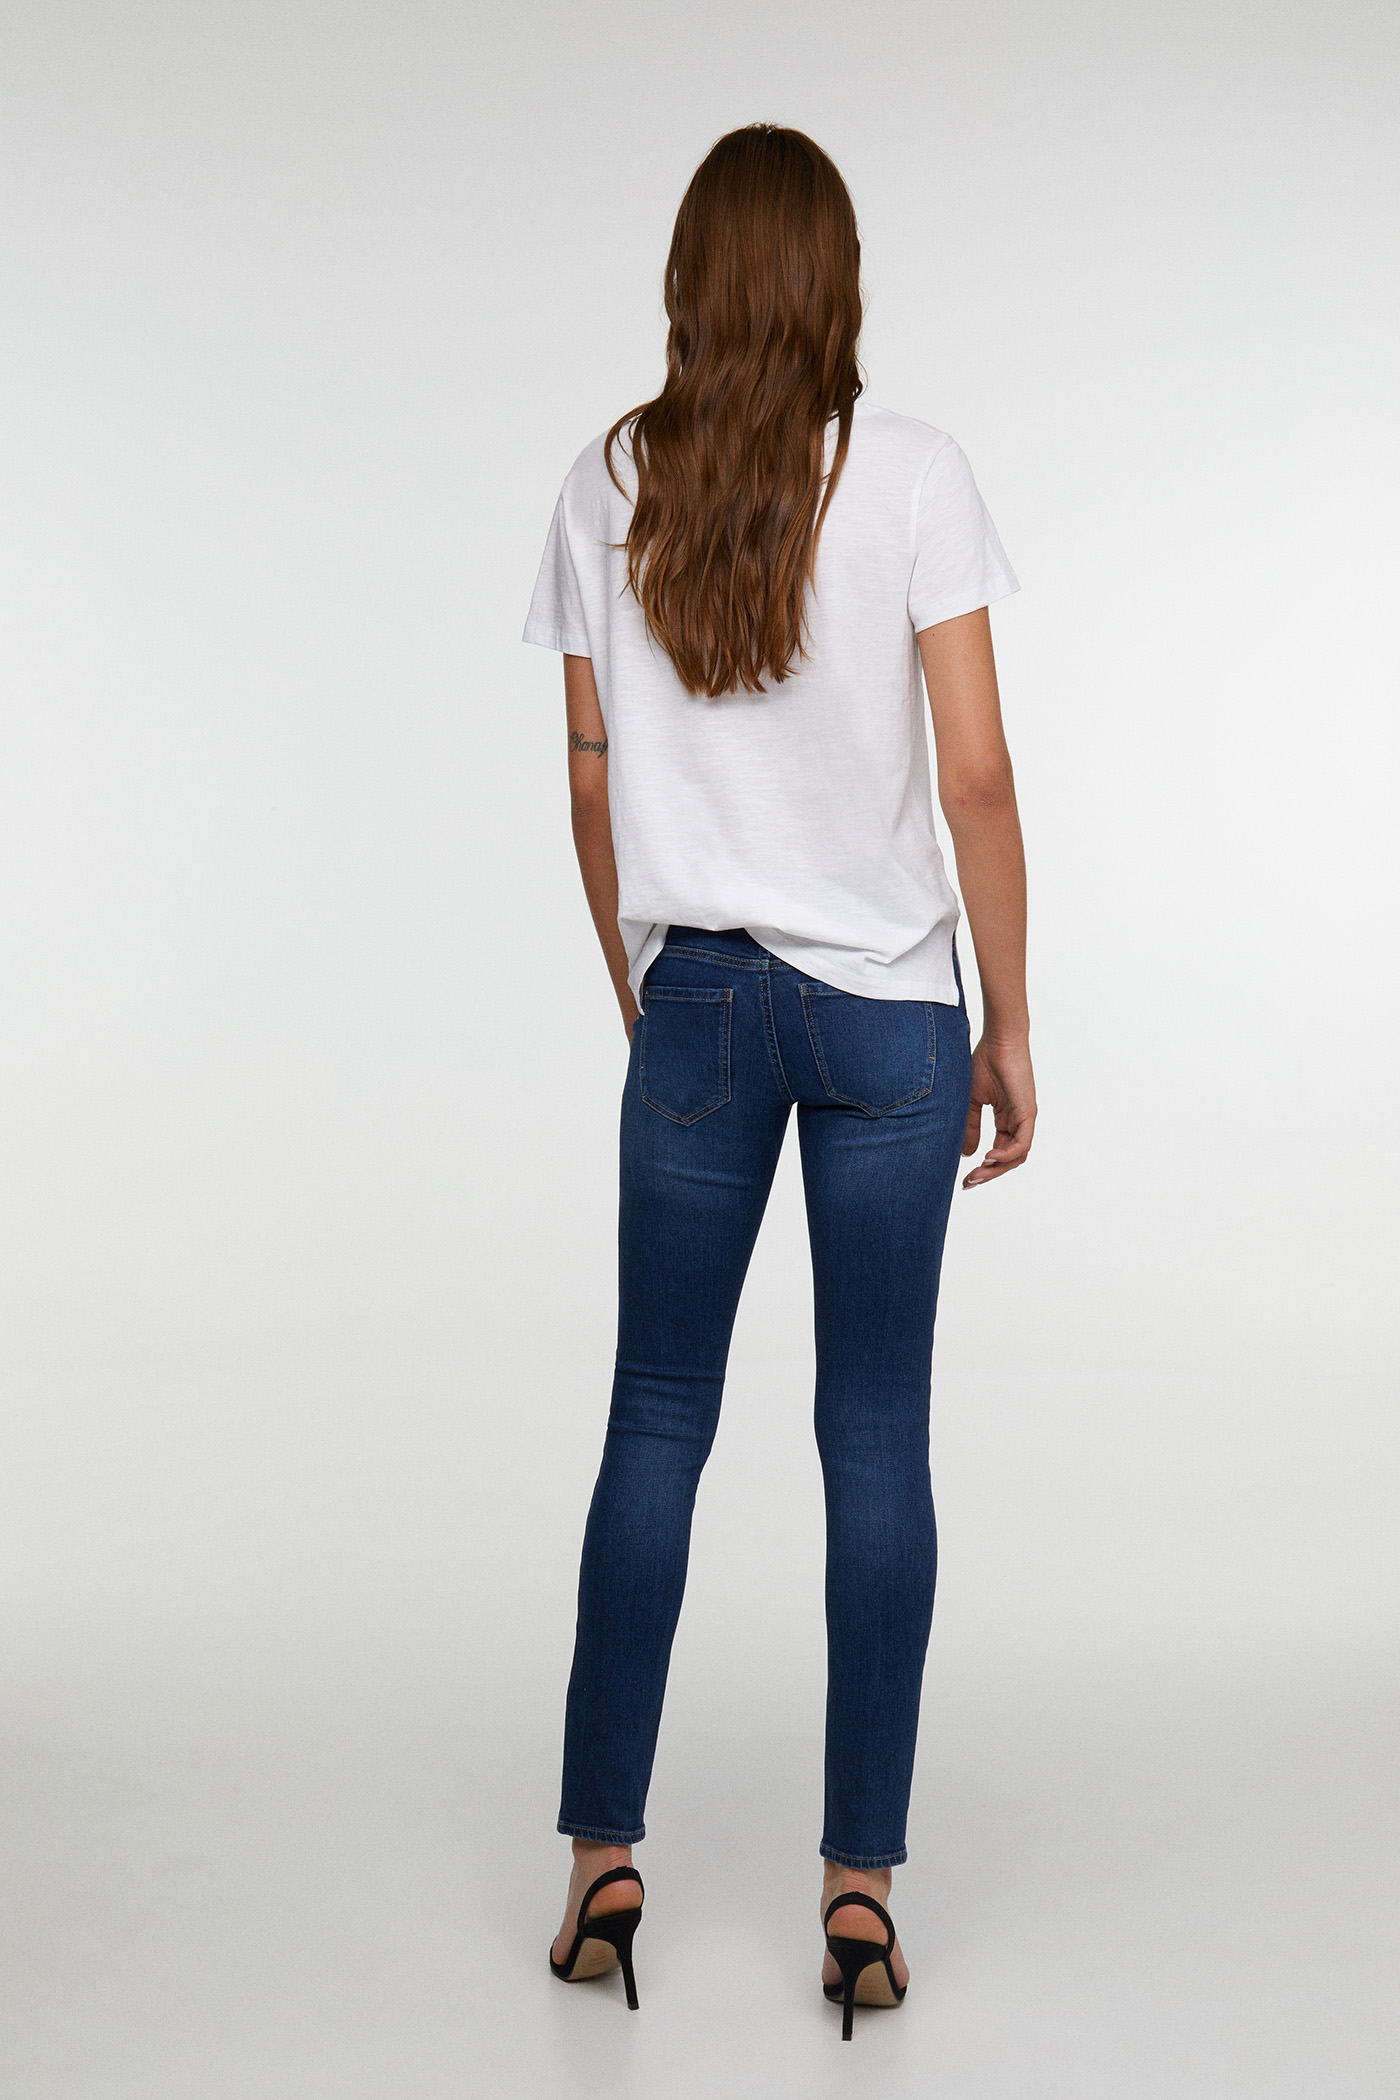 شلوار جینز 26003 سایز 38 تا 44 مارک SFERA   *